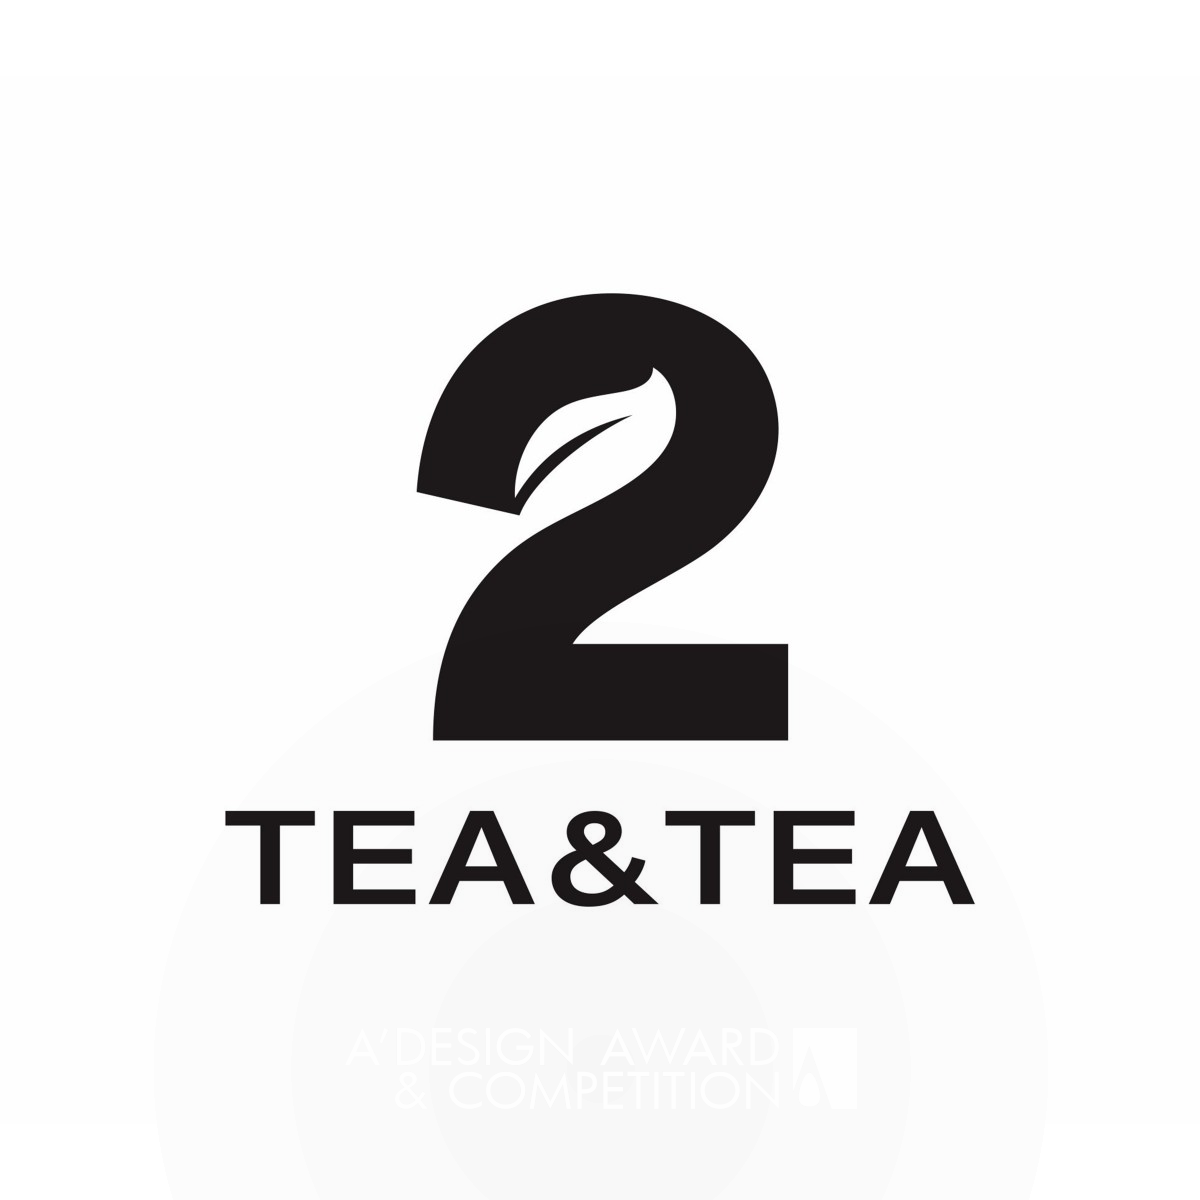 चाय और चाय: चीनी चाय लैटे के आधार पर एक द्विभाजित ब्रांडिंग अभियान